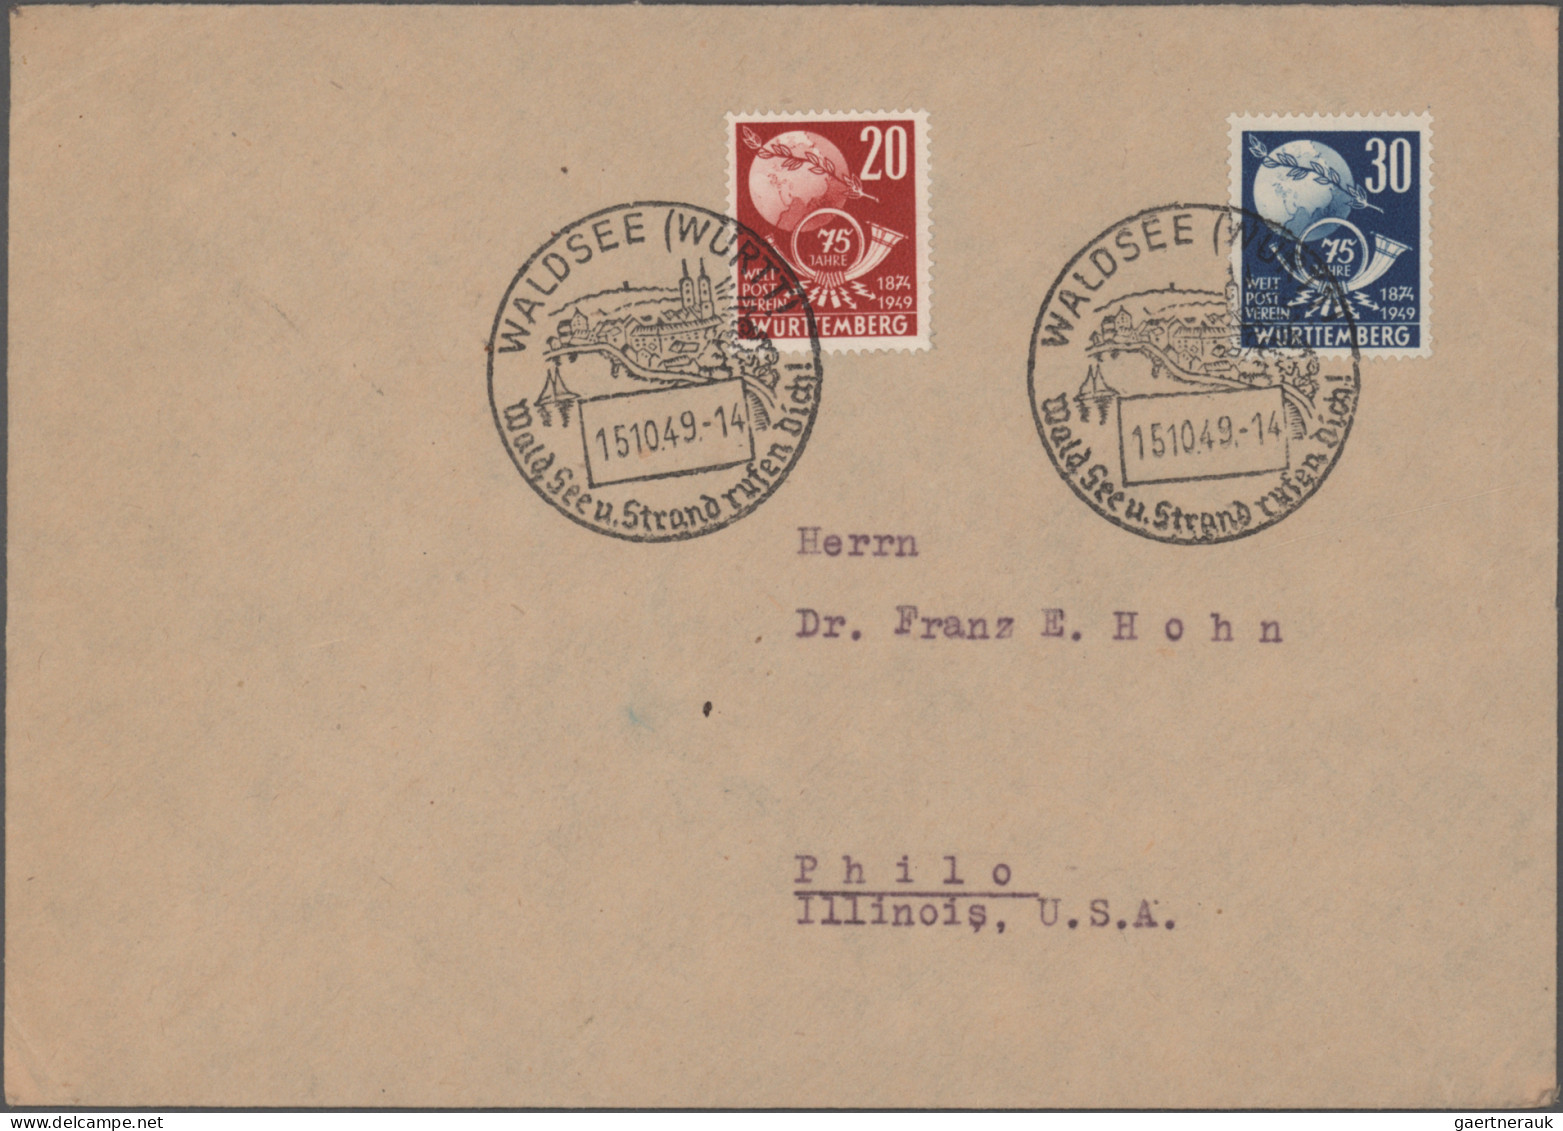 Französische Zone: 1946/1949, saubere Sammlung von ca. 57 Briefen und Karten, ei